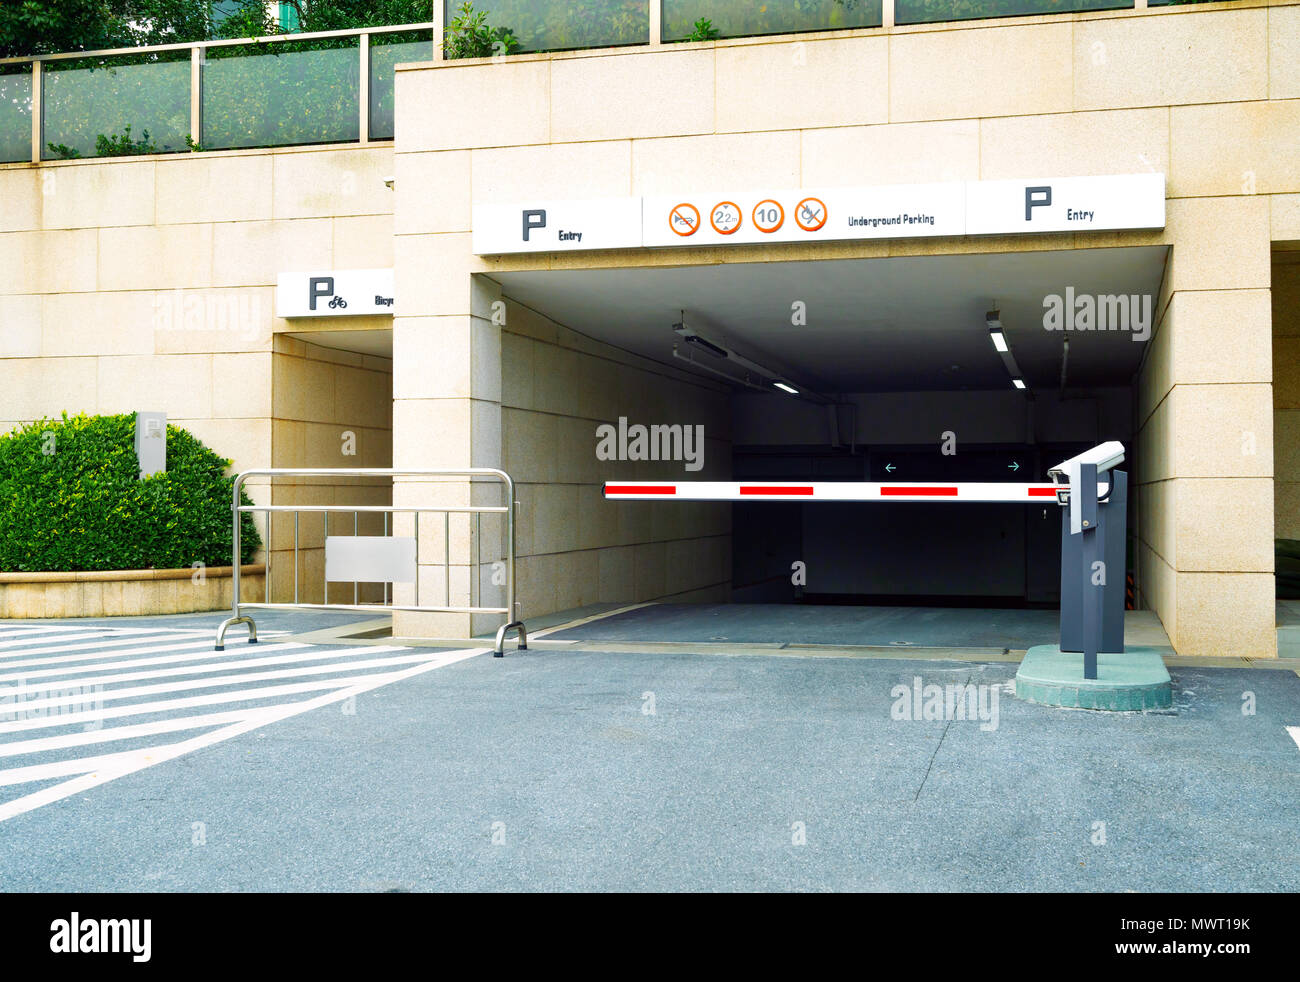 Ramp access to underground public parking garage Stock Photo